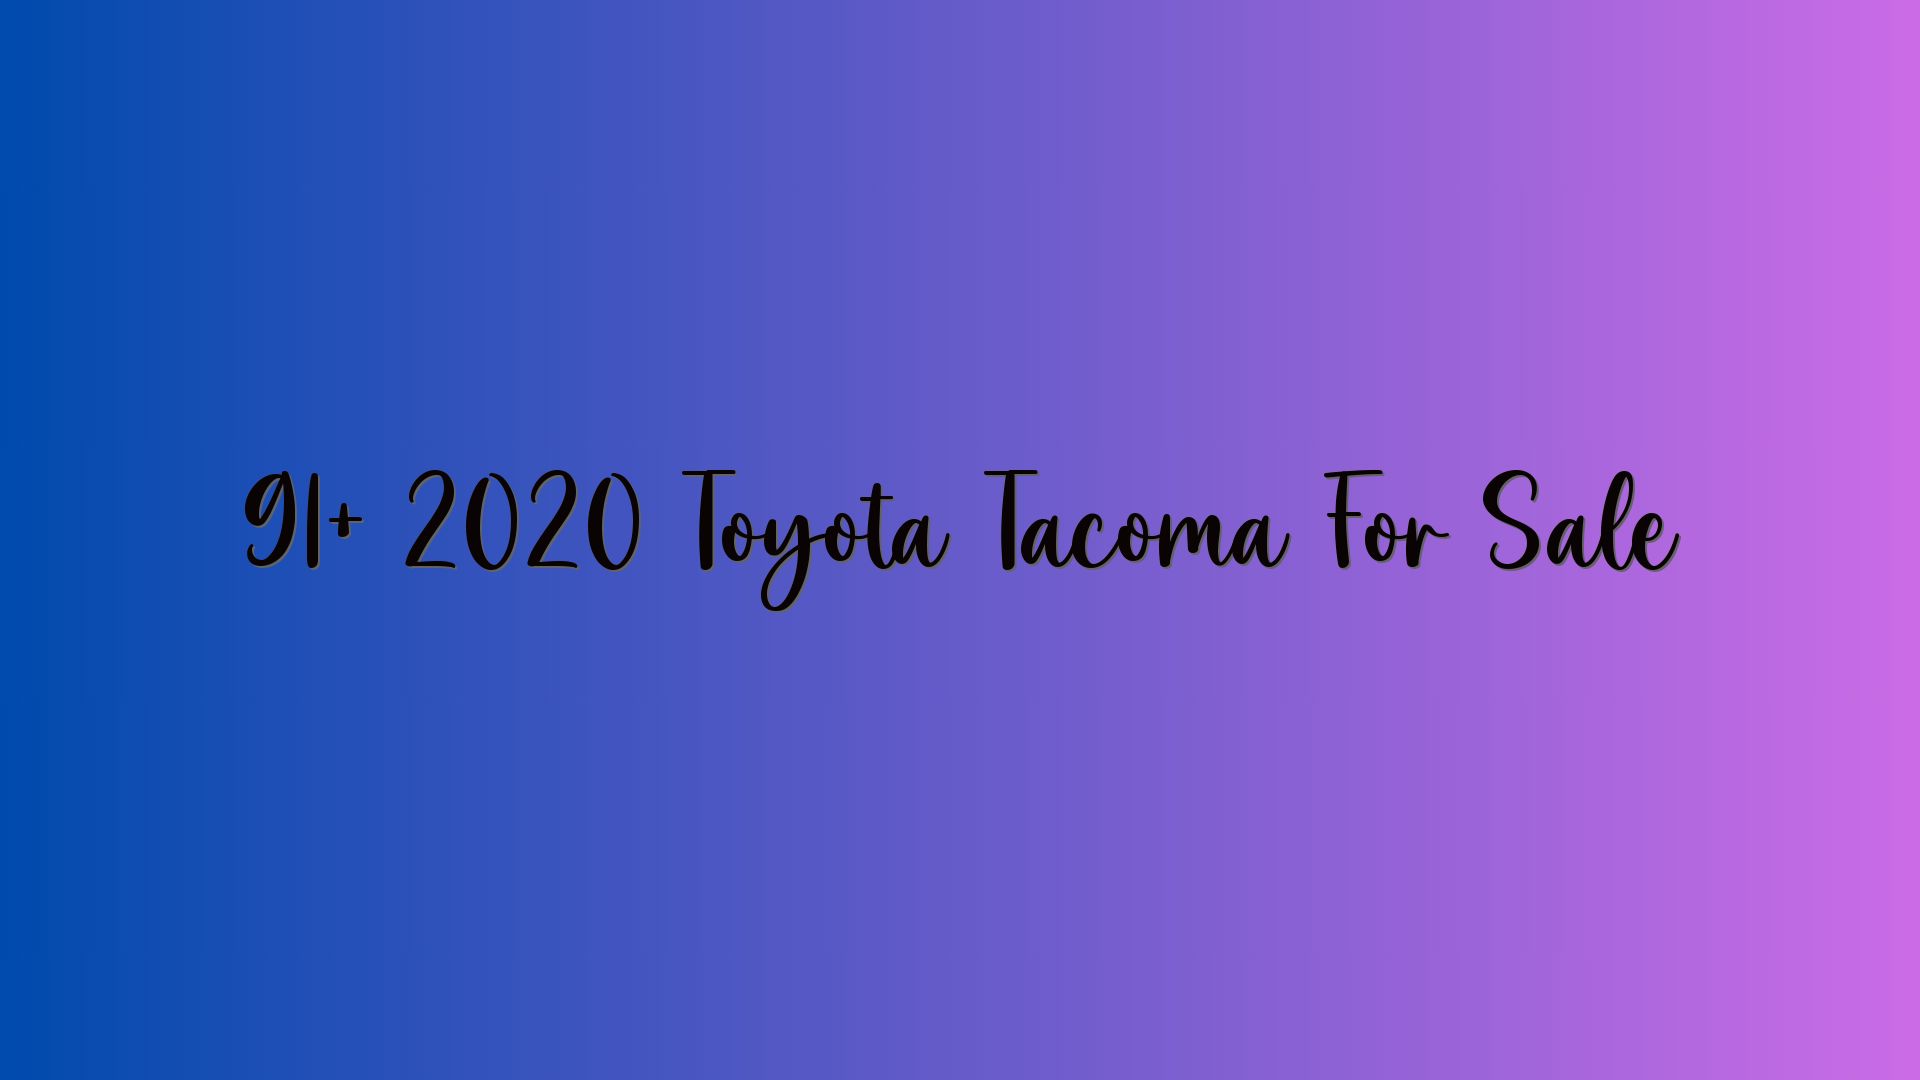 91+ 2020 Toyota Tacoma For Sale